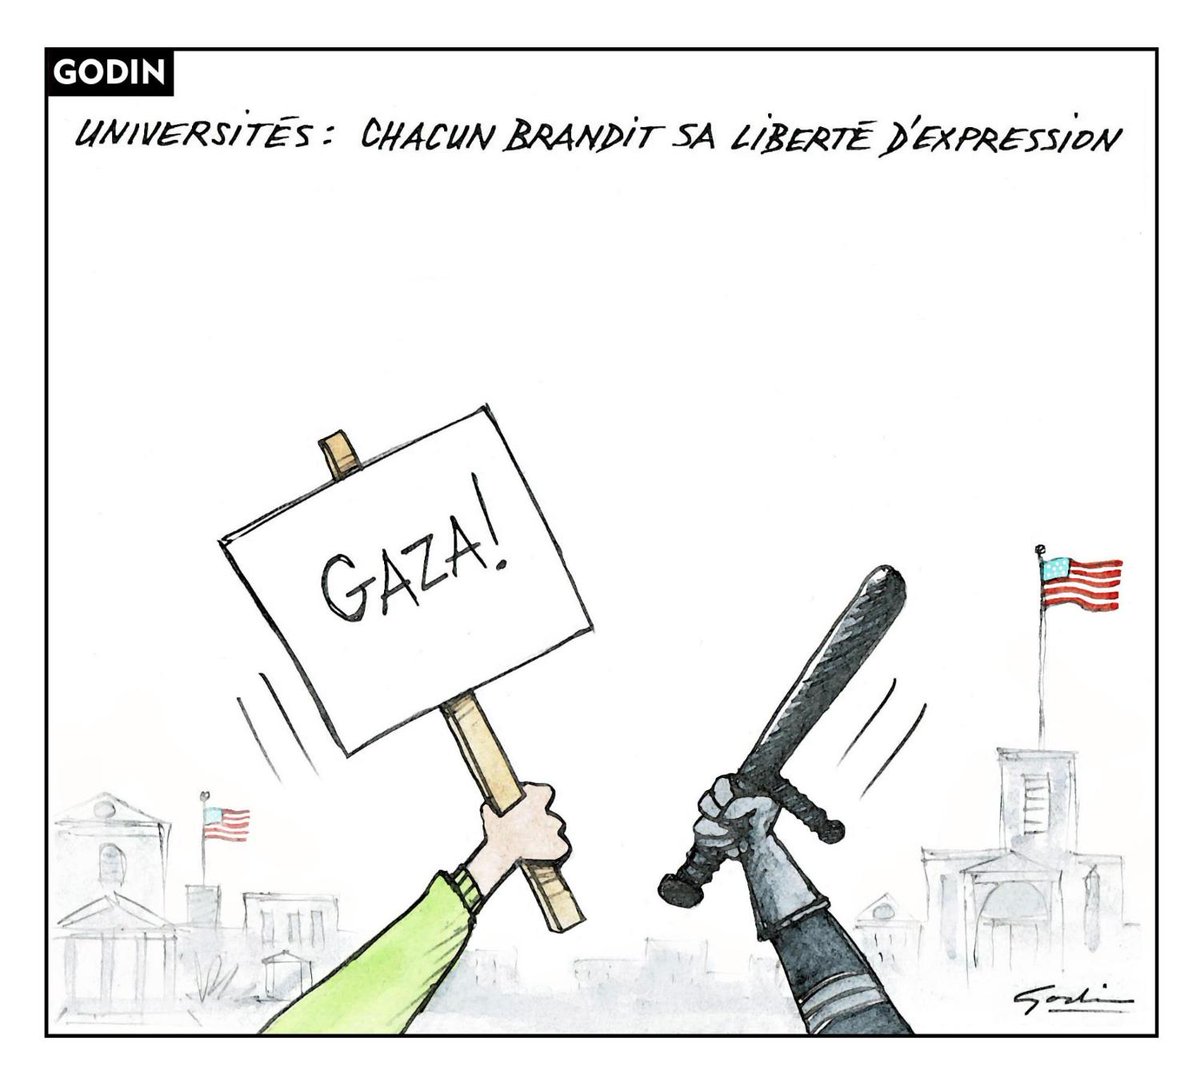 Le regard de notre caricaturiste Godin sur l'actualité du jour #Gaza #universités